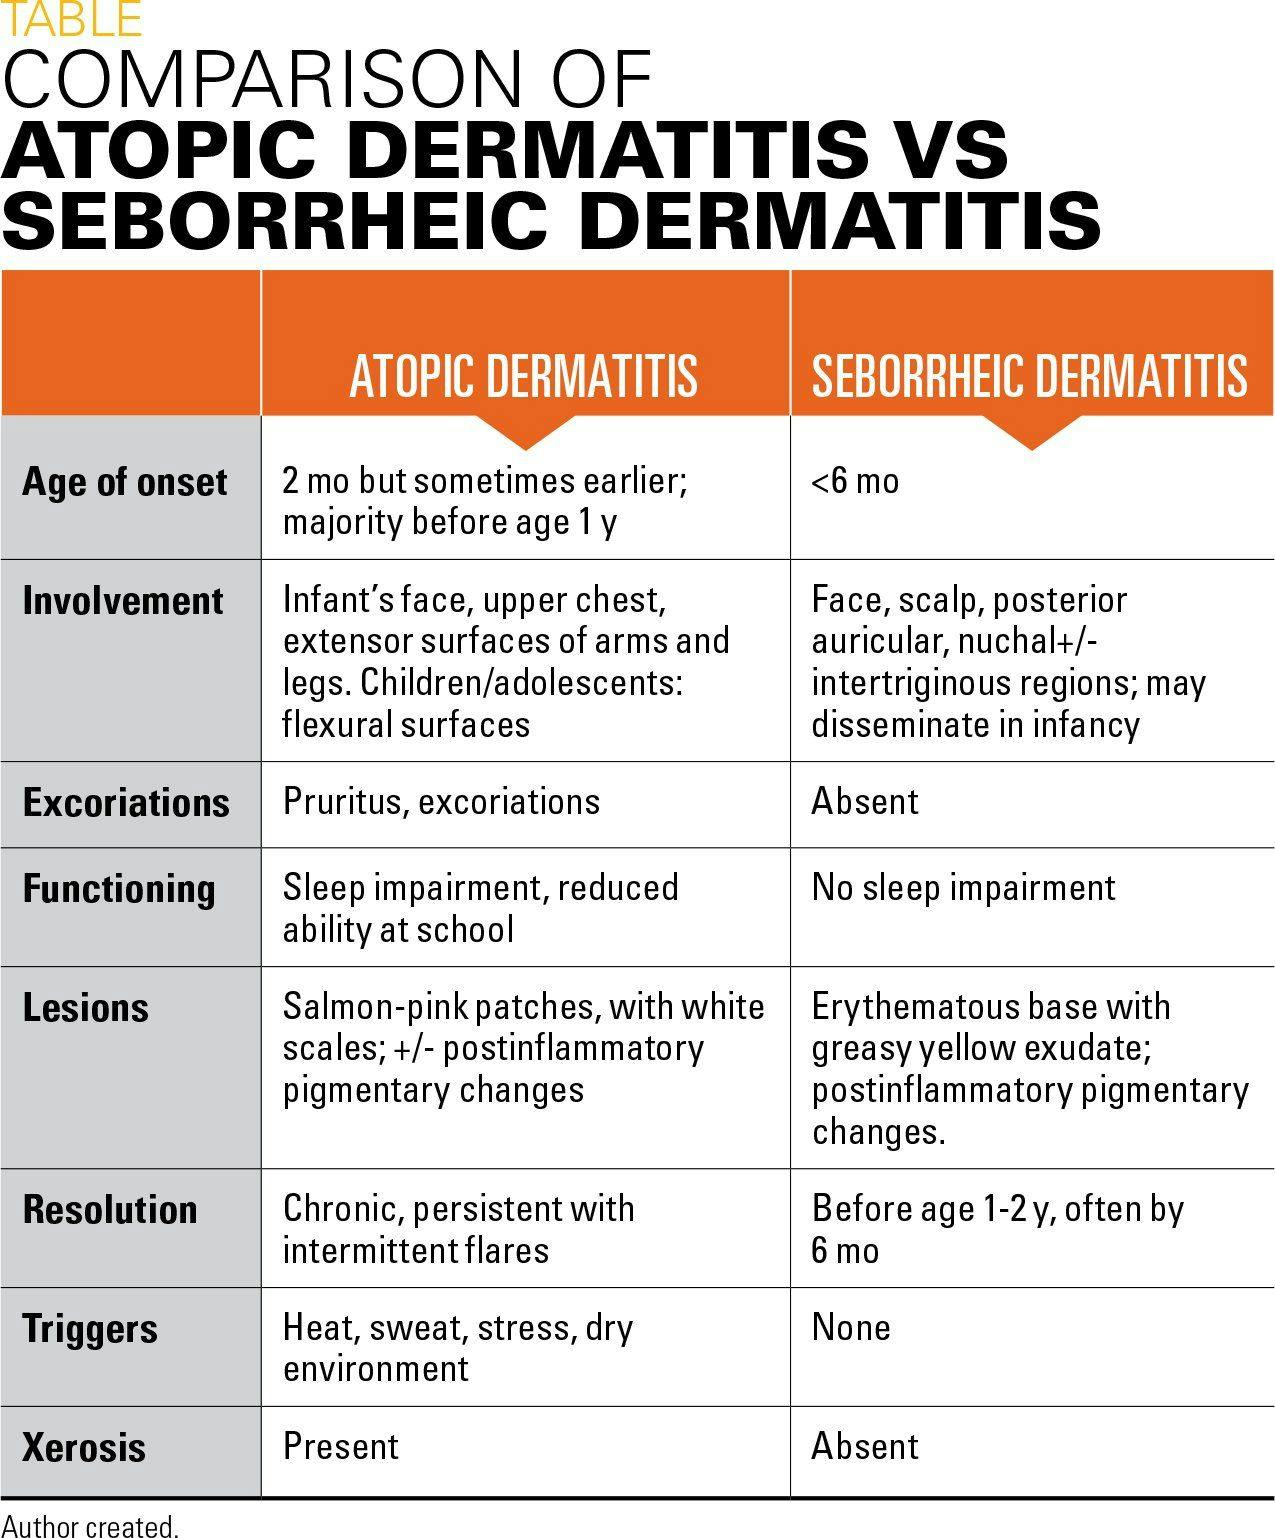 Comparison of atopic dermatitis vs seborrheic dermatitis